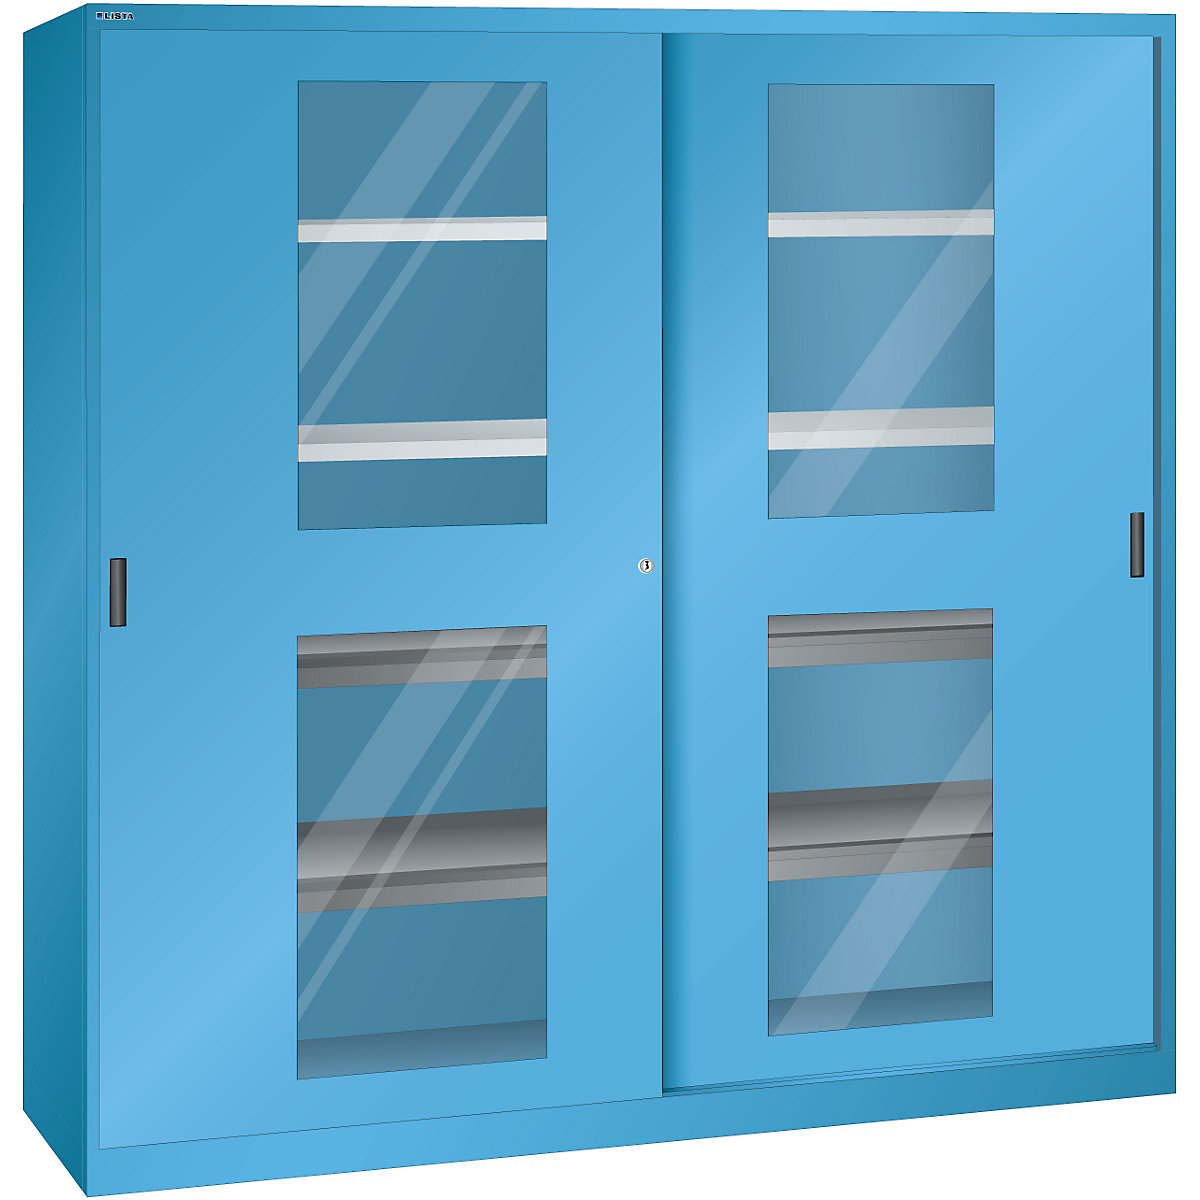 Tolóajtós szekrény ablakos ajtókkal – LISTA, 4 polc, 4 kihúzható polc, világoskék-8